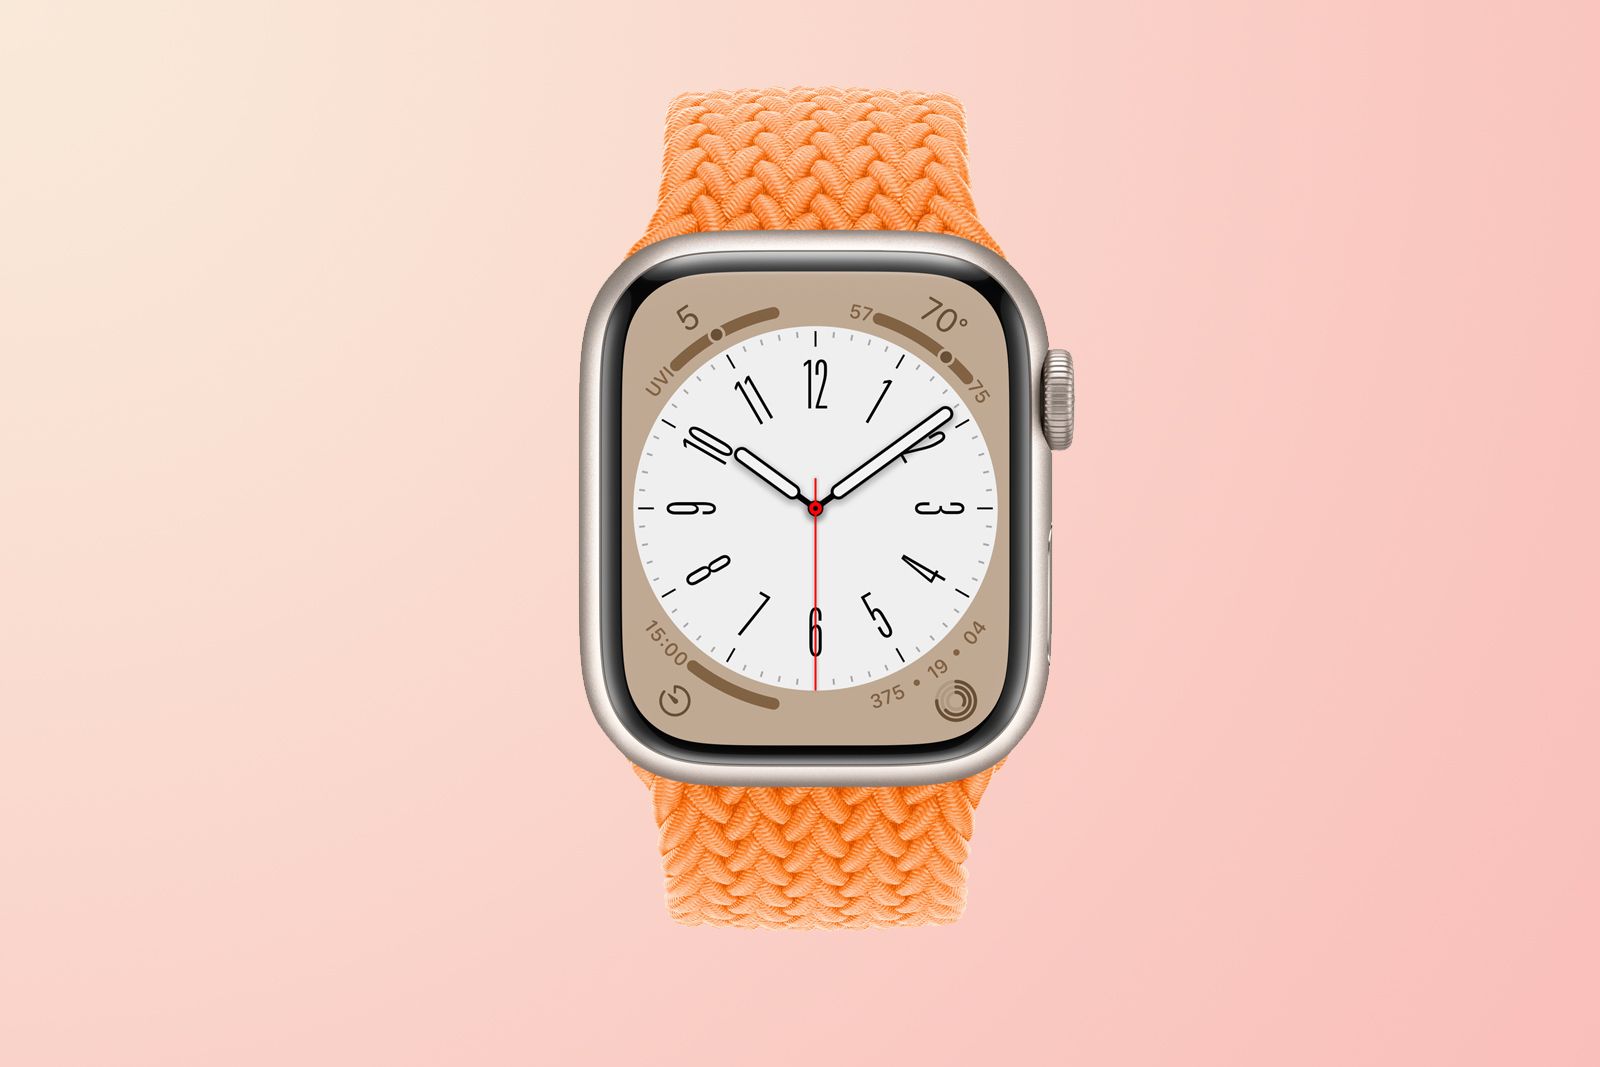 Holen Sie sich diese Apple Watch für unter 200 € mit diesem Prime Day-Angebot